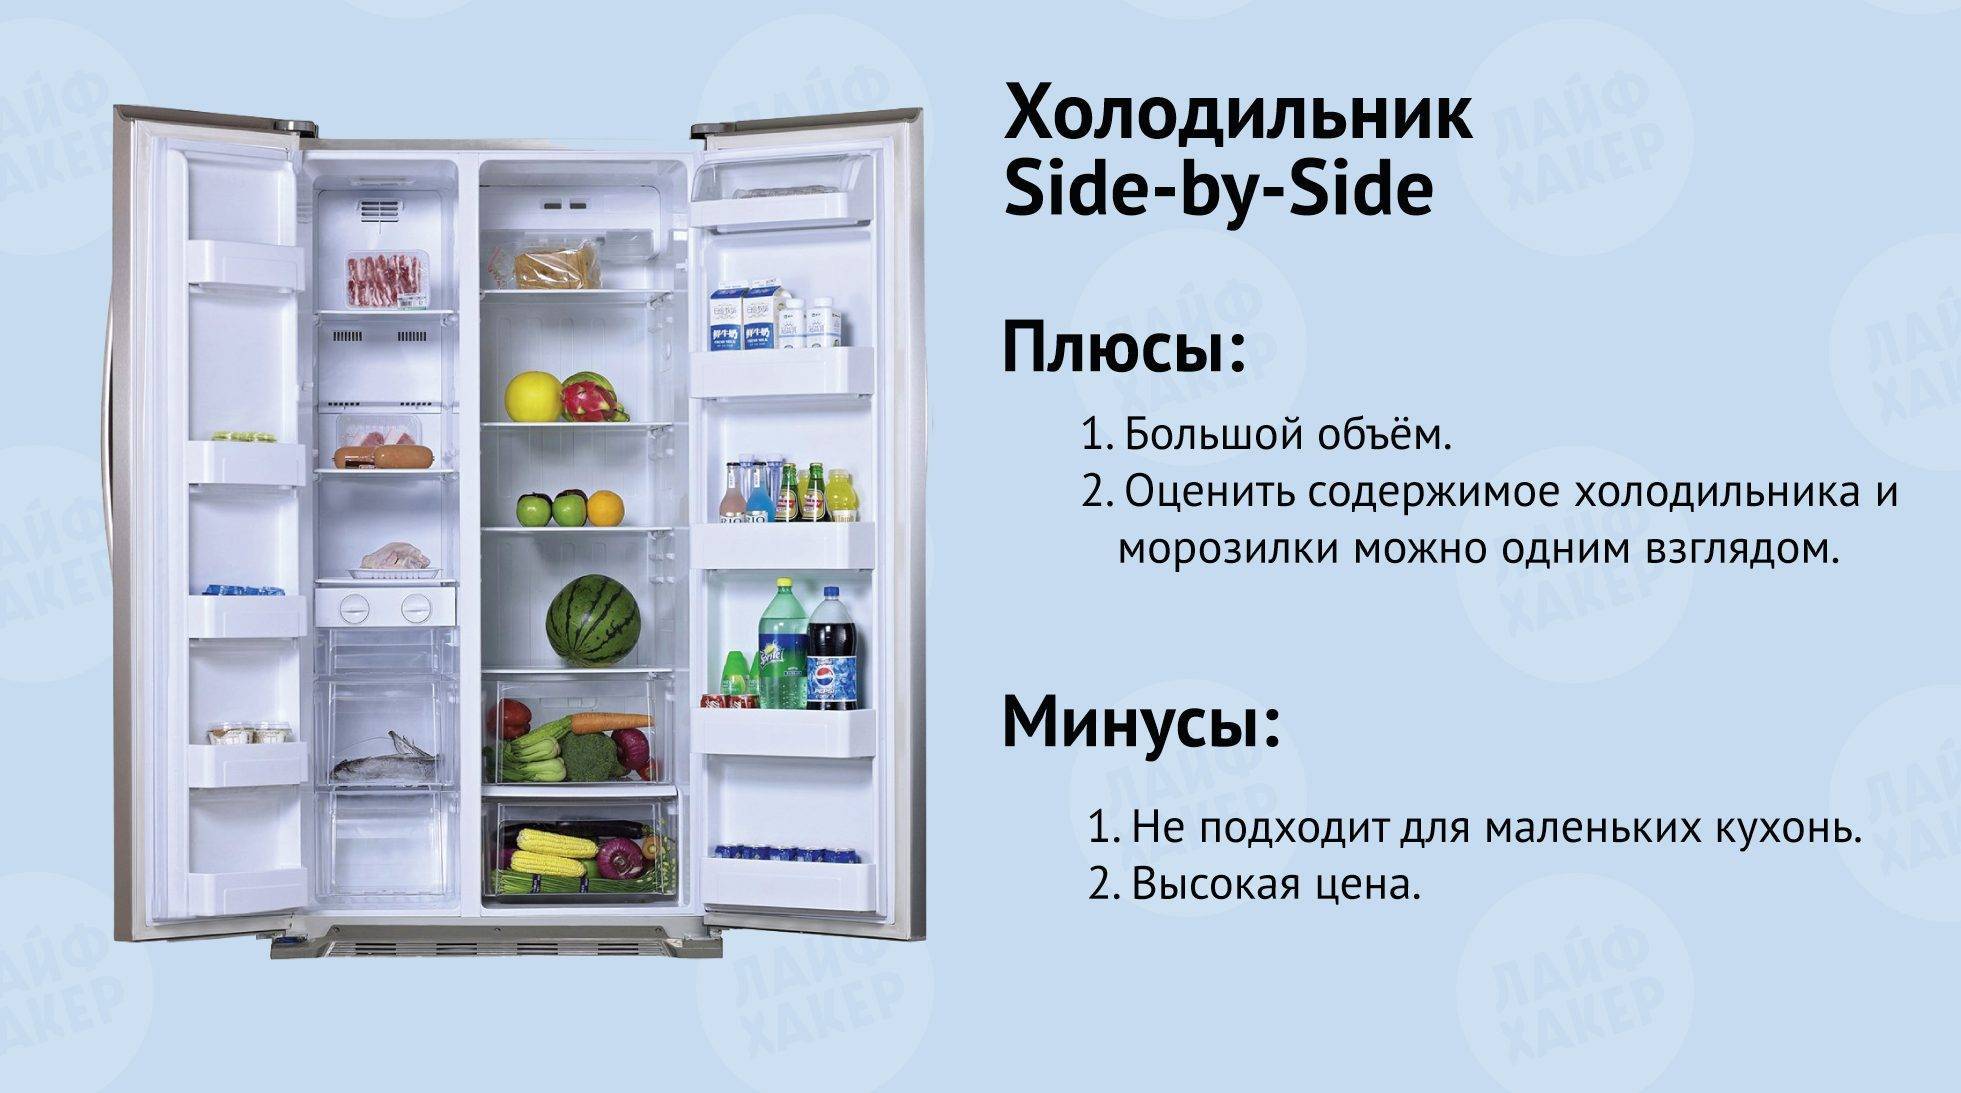 Температура холодильника: 9 показателей от разных производителей